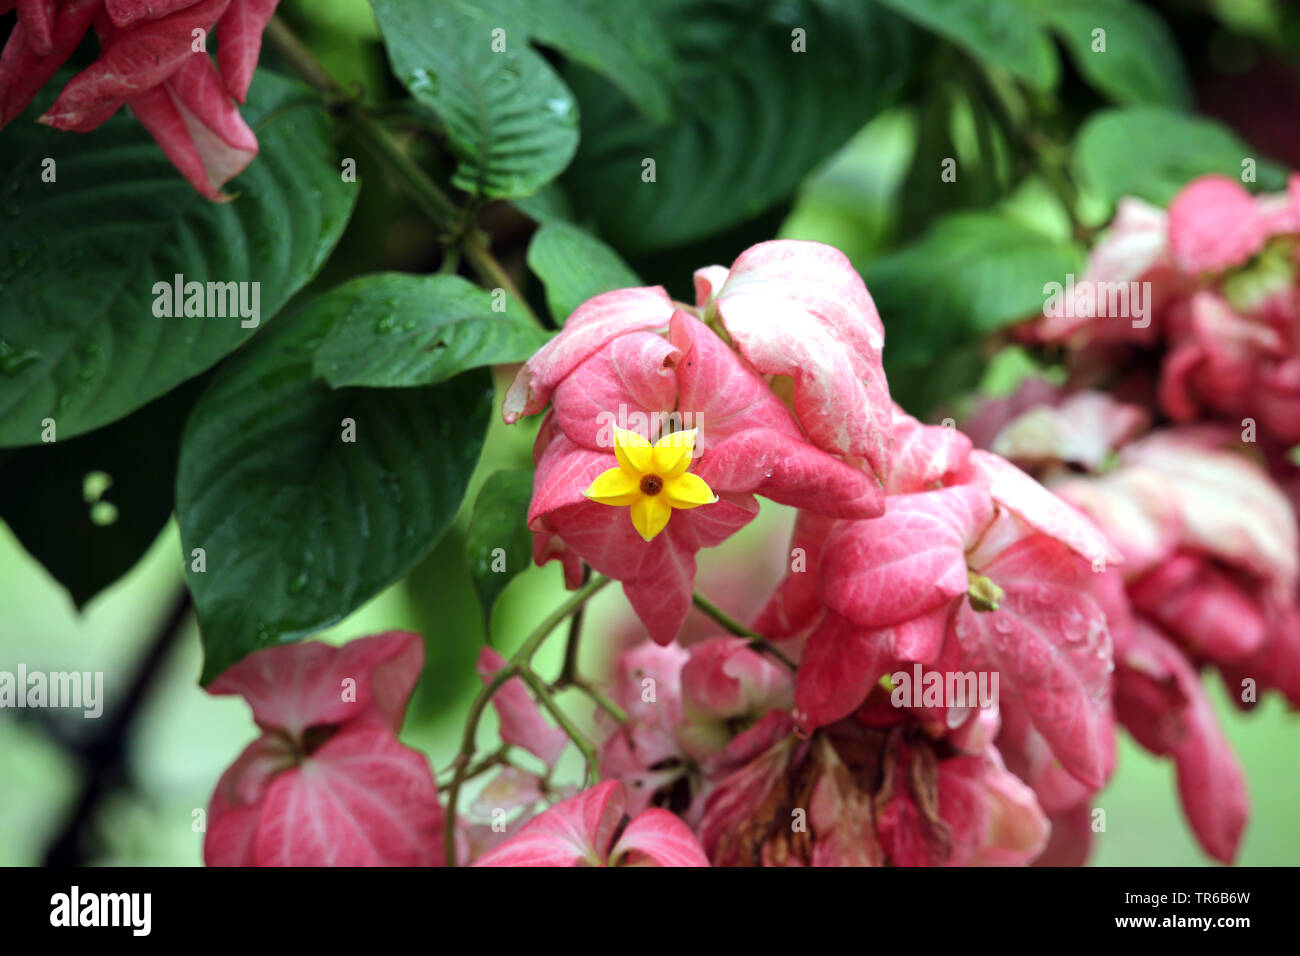 Bangkok rose, Queen sirikit (Mussaenda philippica), blooming, Singapore Stock Photo